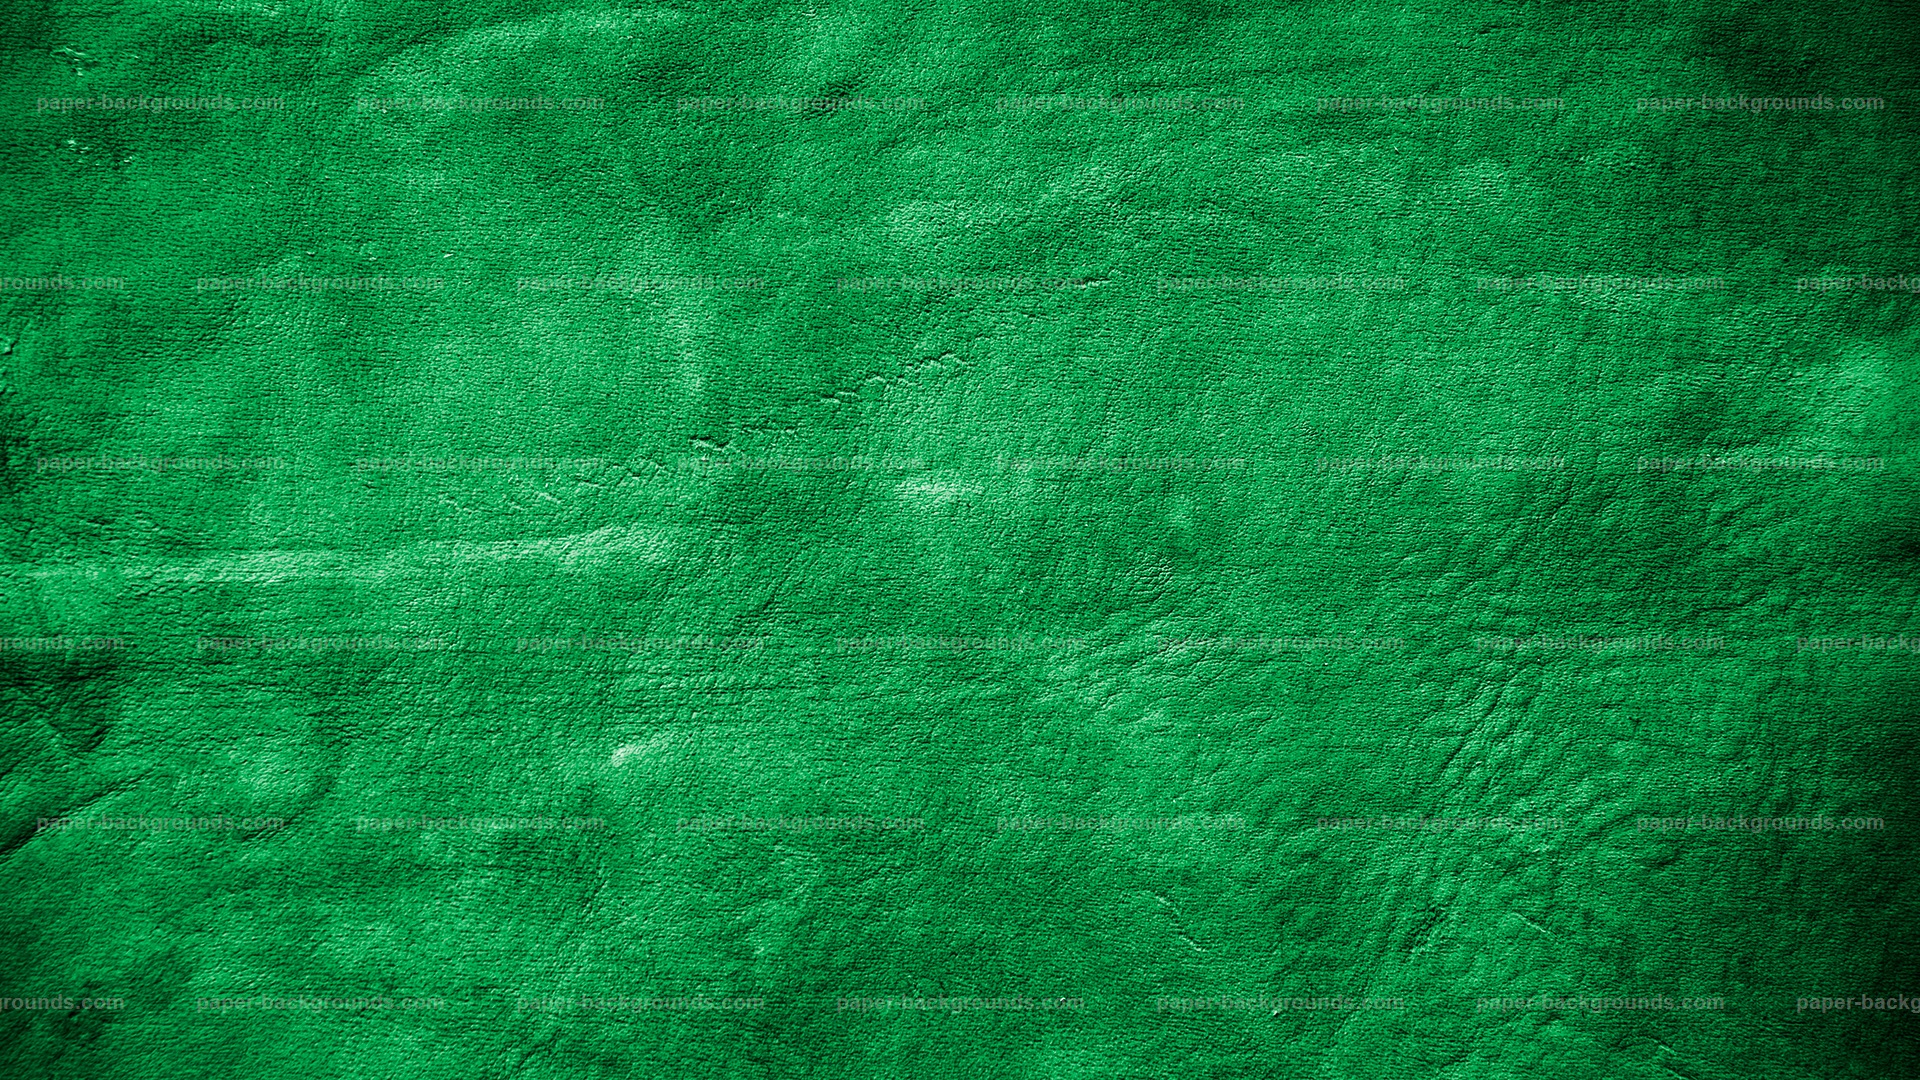 Vải da mềm mịn được khéo léo tạo hoạt giác quấn quanh các đường nét mềm mại và hấp dẫn để tạo ra một họa tiết độc đáo. Và chúng tôi đã lựa chọn Green Soft Leather Texture để mang đến cho bạn cảm giác tươi mới và sự mềm mại đáng ngưỡng mộ.